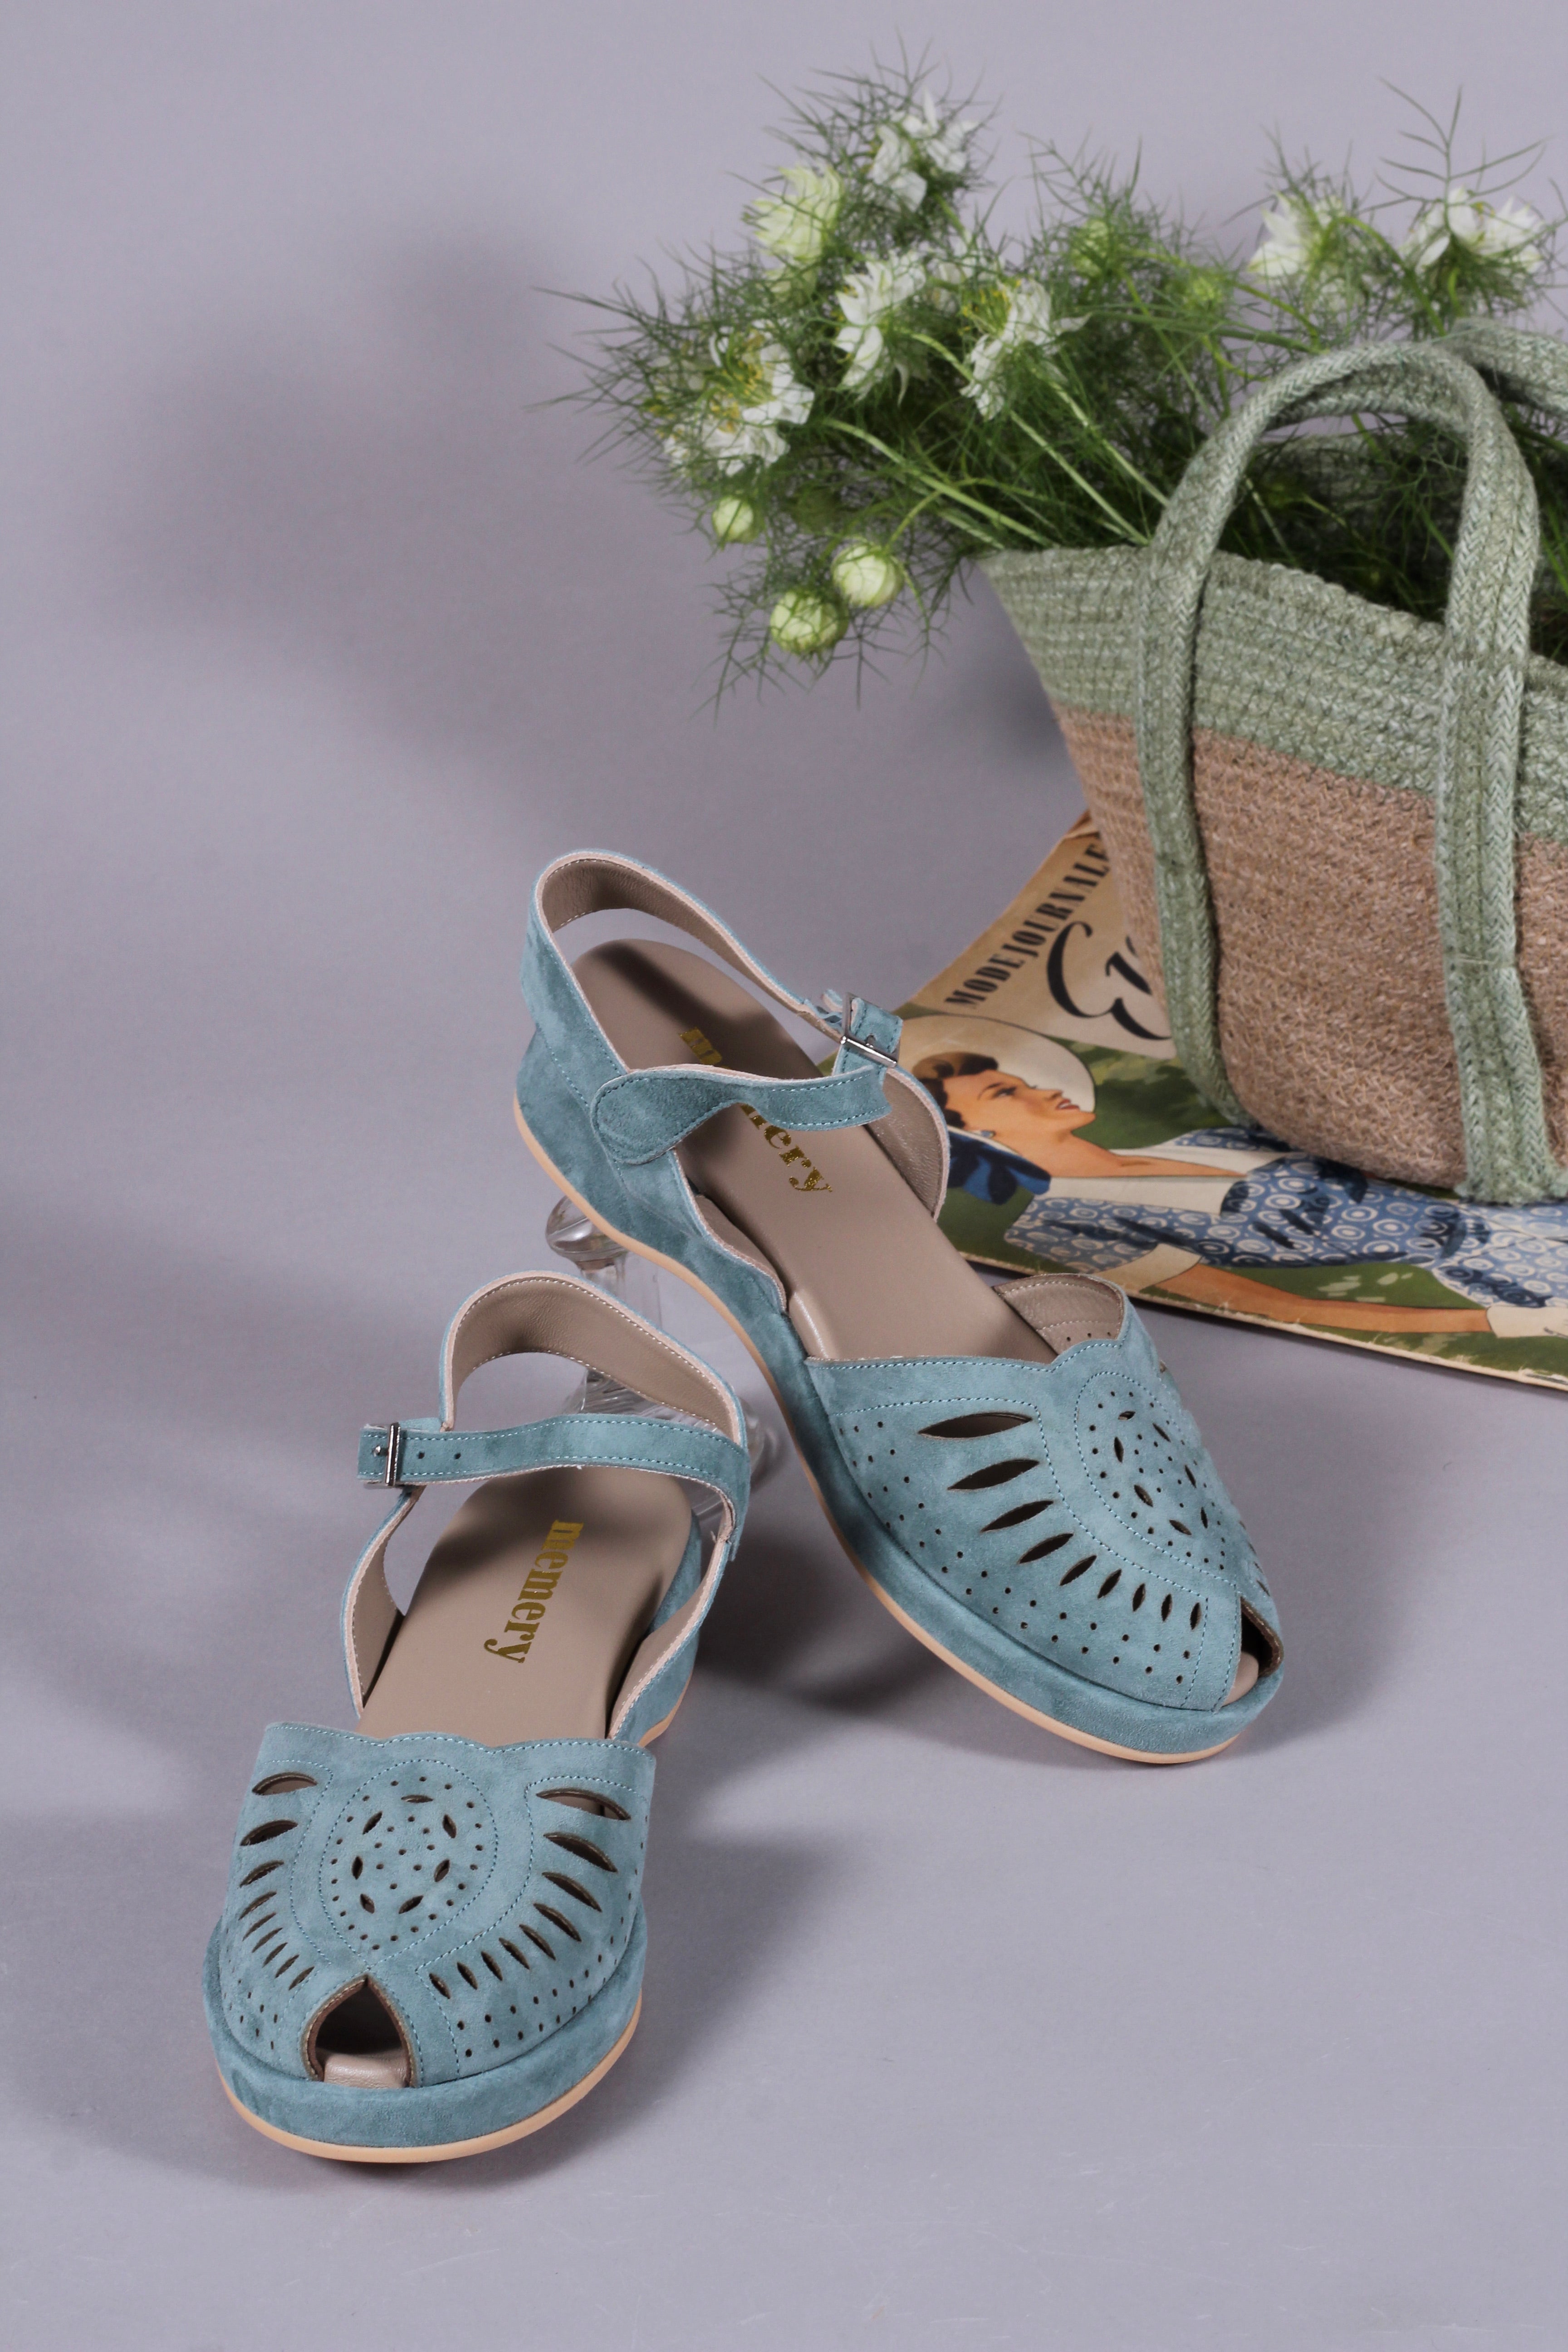 Bløde 1940'er / 1950'er inspirerede sandaler - Støvet blågrøn - Ella